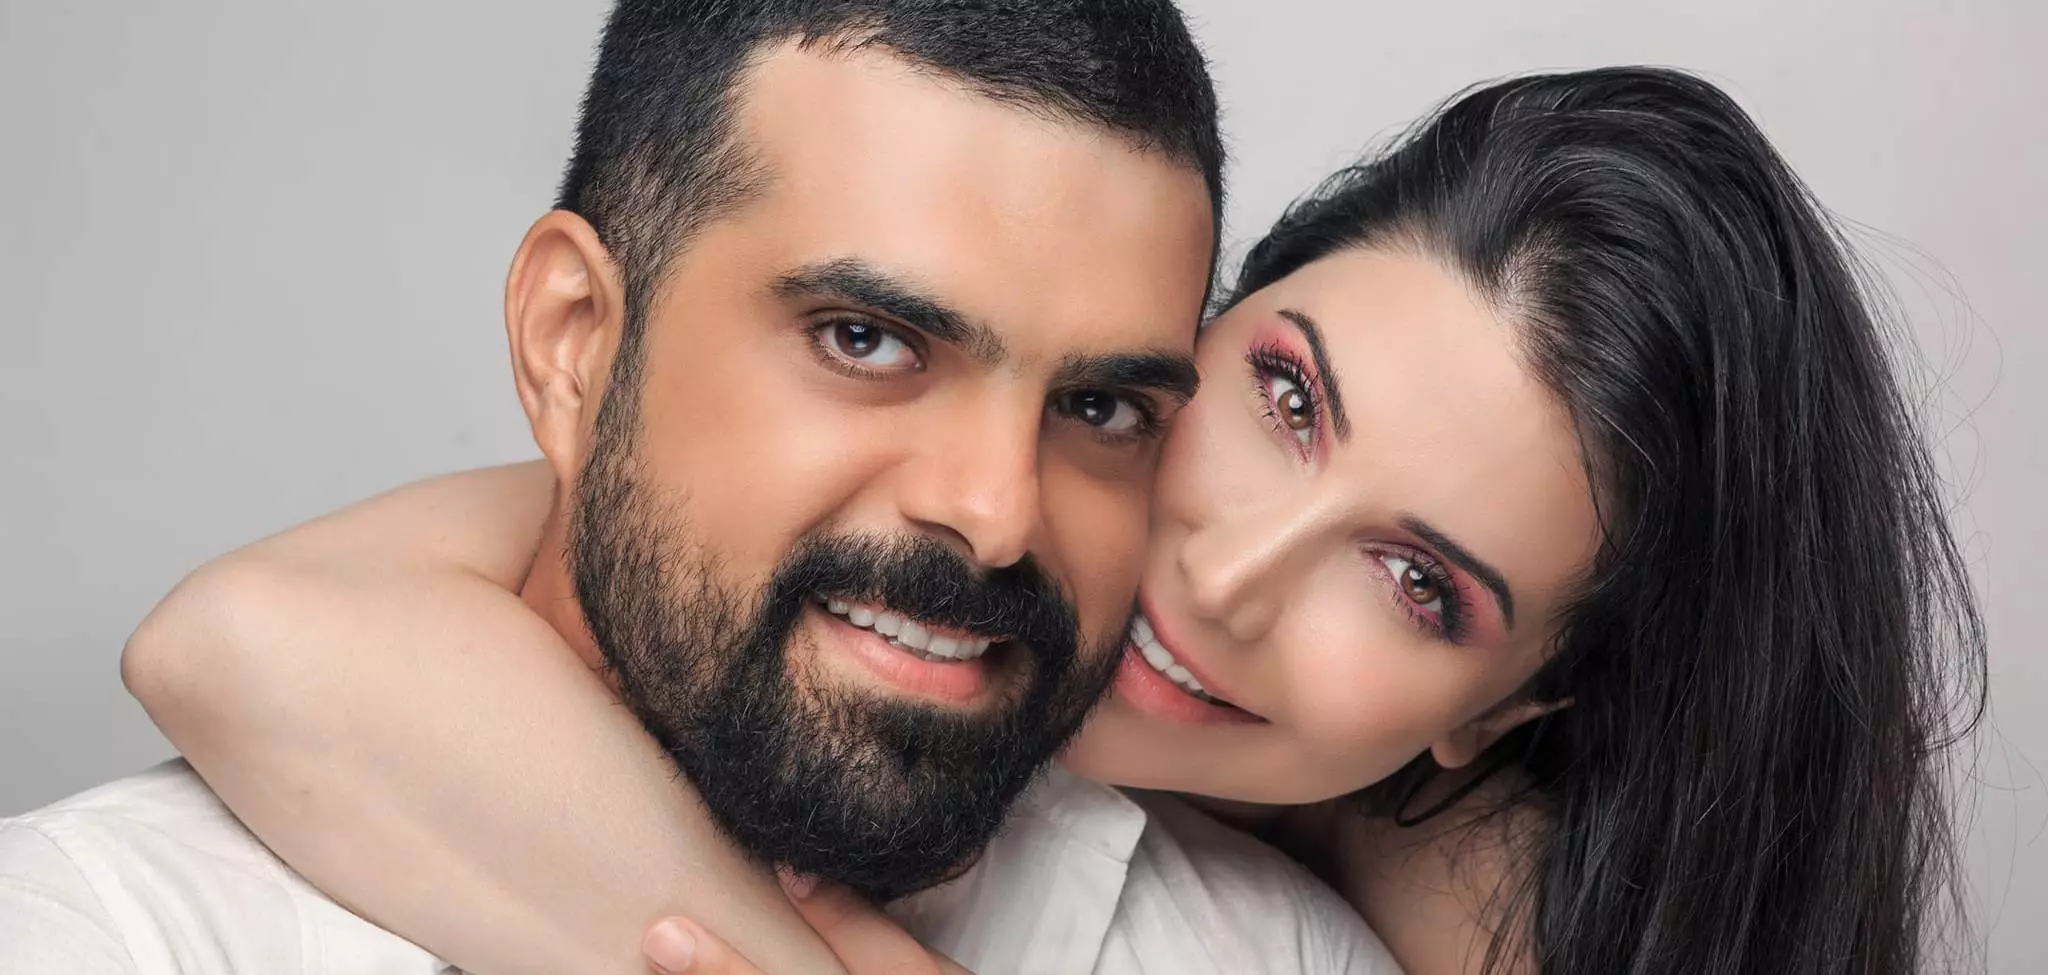 يزن خليل .. 10 معلومات عن الممثل الذي جسد شخصيات محبوبة وعاش قصة حب مع زوجته